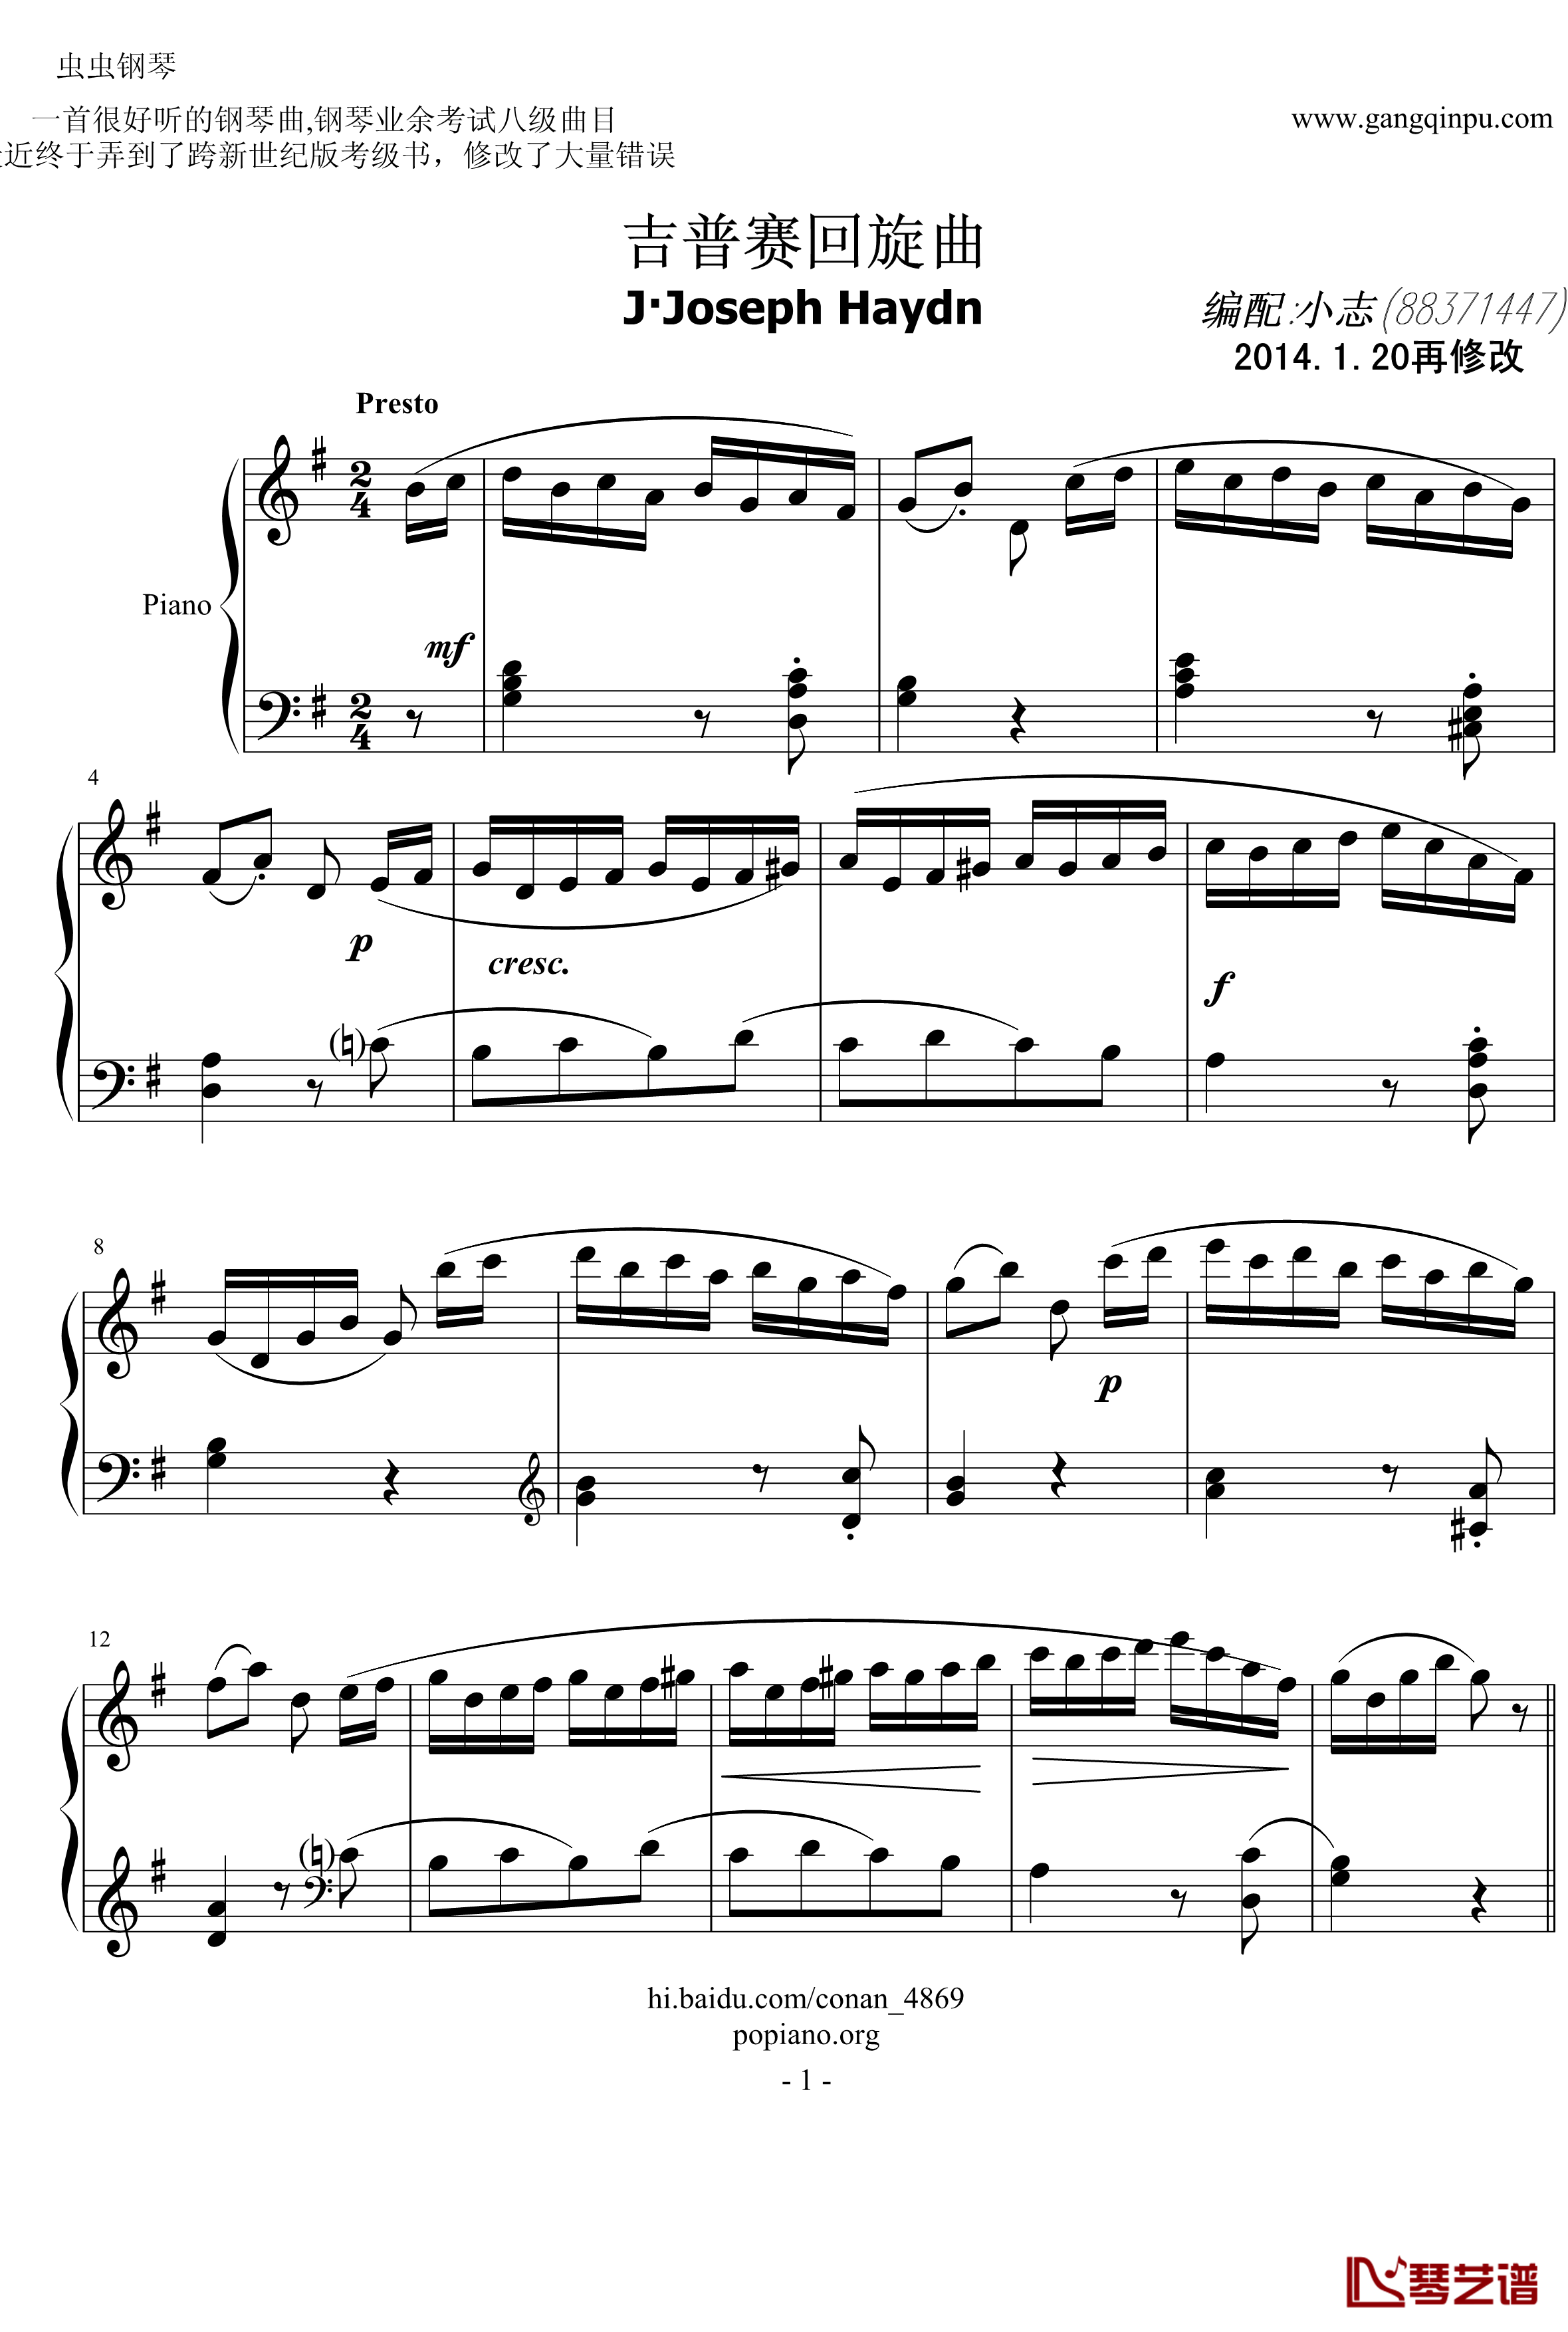 吉普赛回旋曲钢琴谱-海顿1